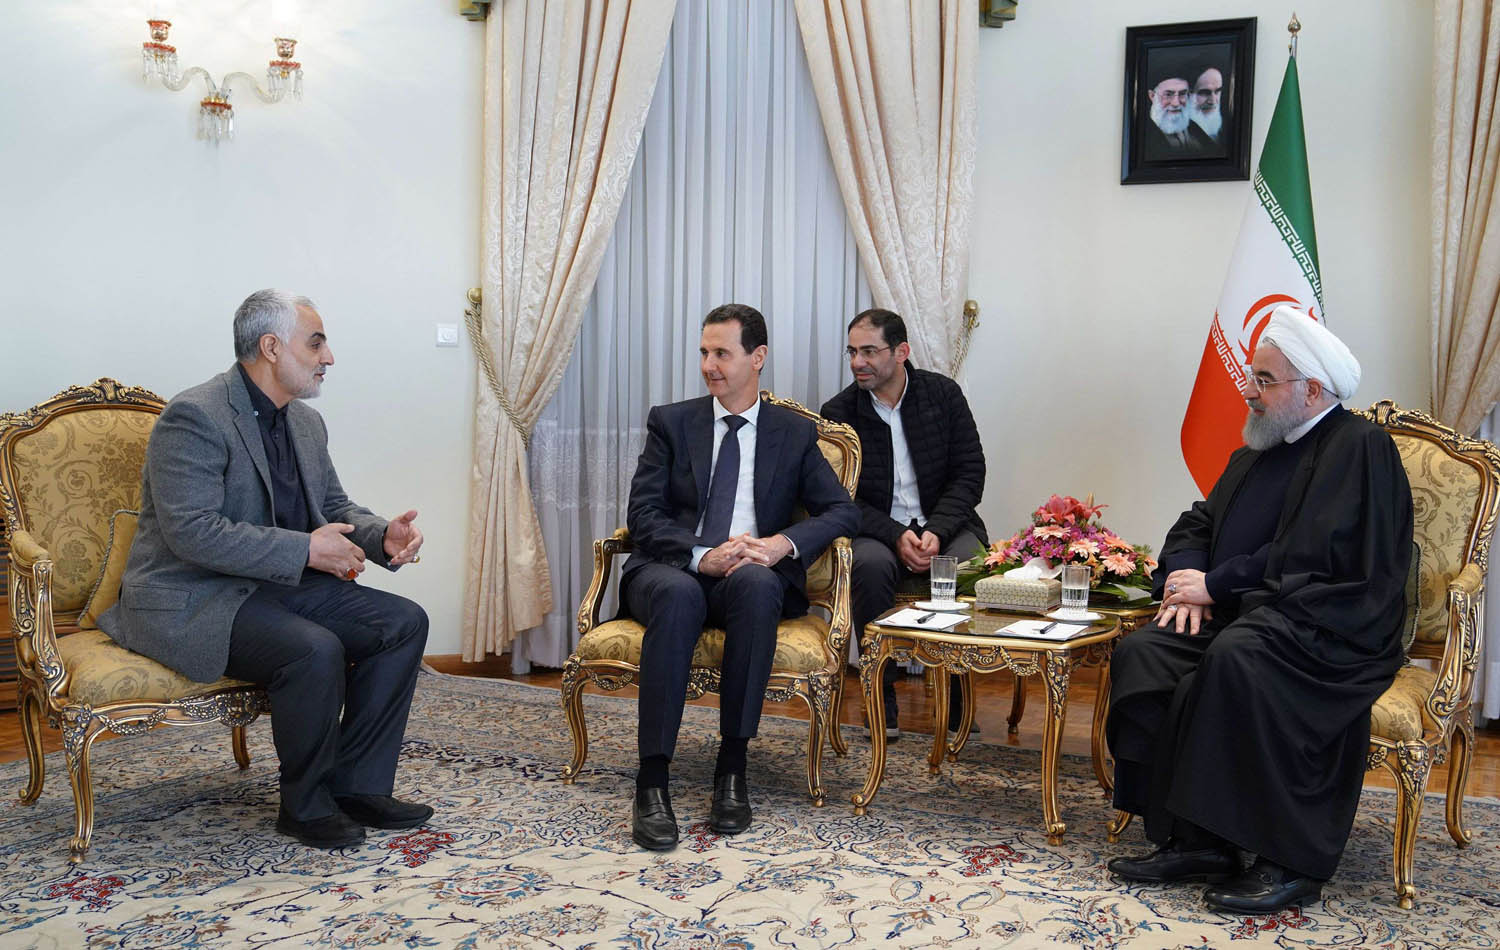 الرئيس السوري بشار الأسد يتوسط الرئيس الإيراني حسن روحاني وقائد فيلق القدس قاسم سليماني